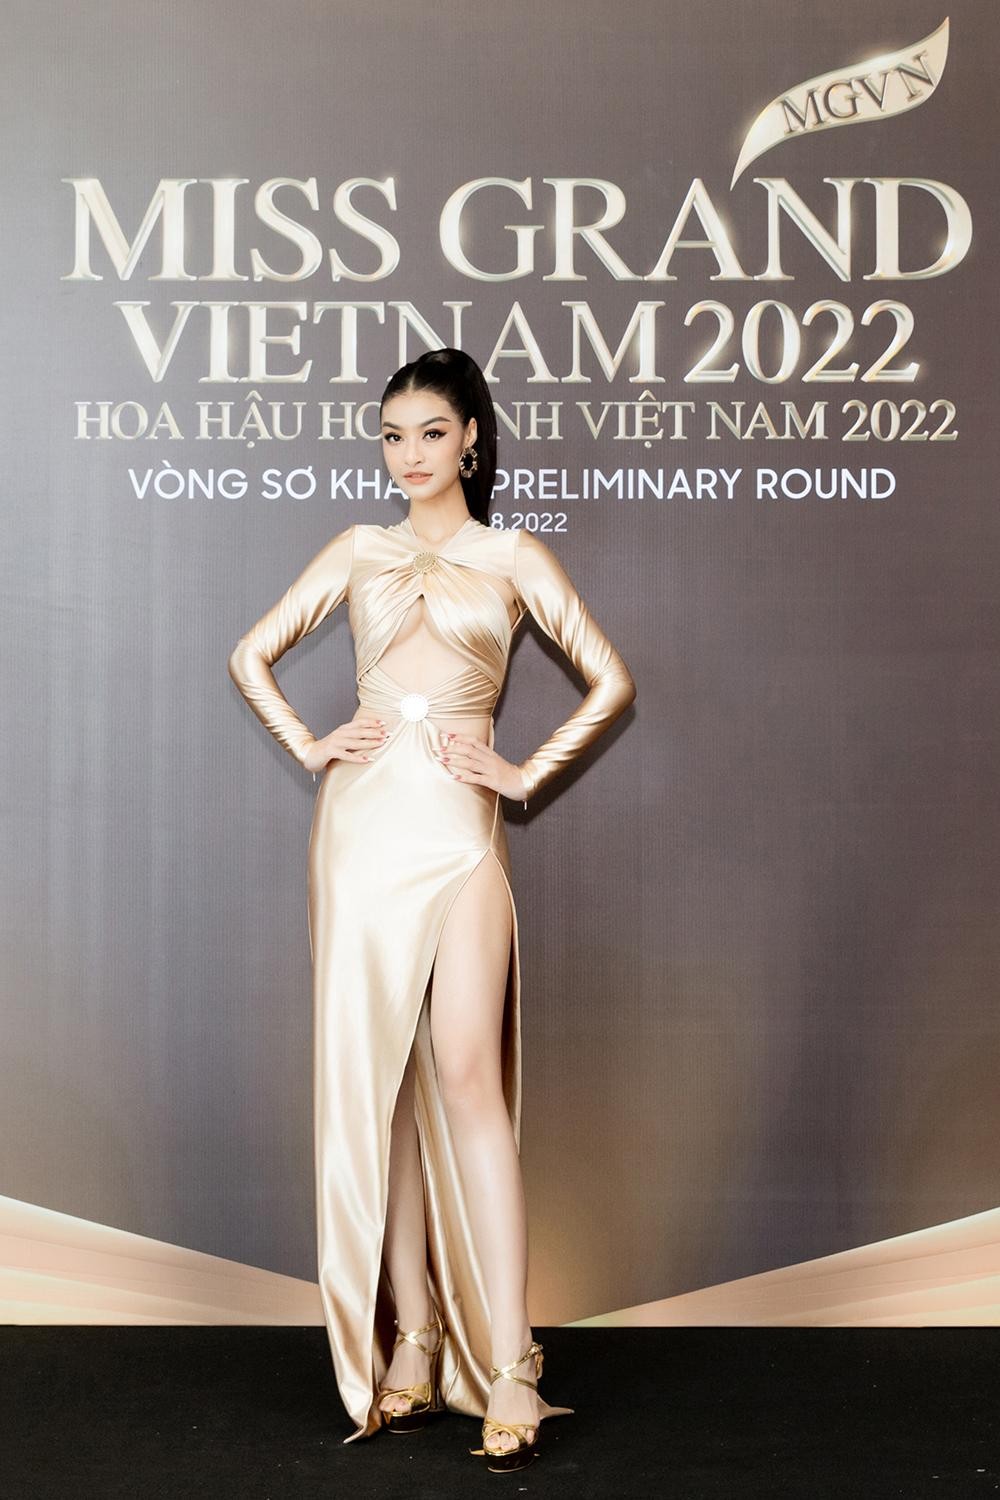 Thảm đỏ sơ khảo Miss Grand Vietnam 2022: Á hậu Kiều Loan, Ngọc Thảo đọ sắc vóc nóng bỏng - Ảnh 4.